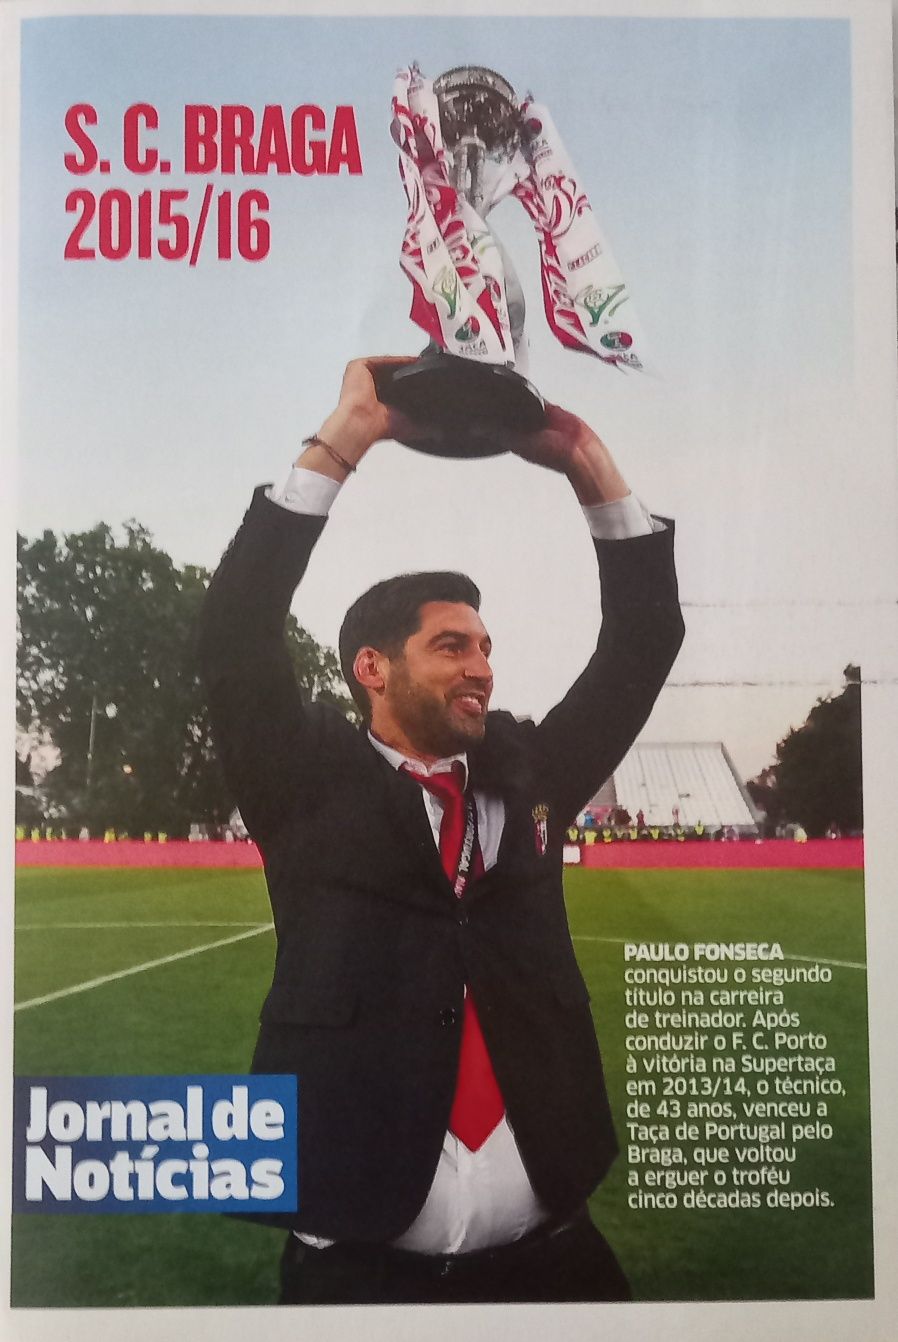 2015/2016 poster S. C. Braga Taça de Portugal